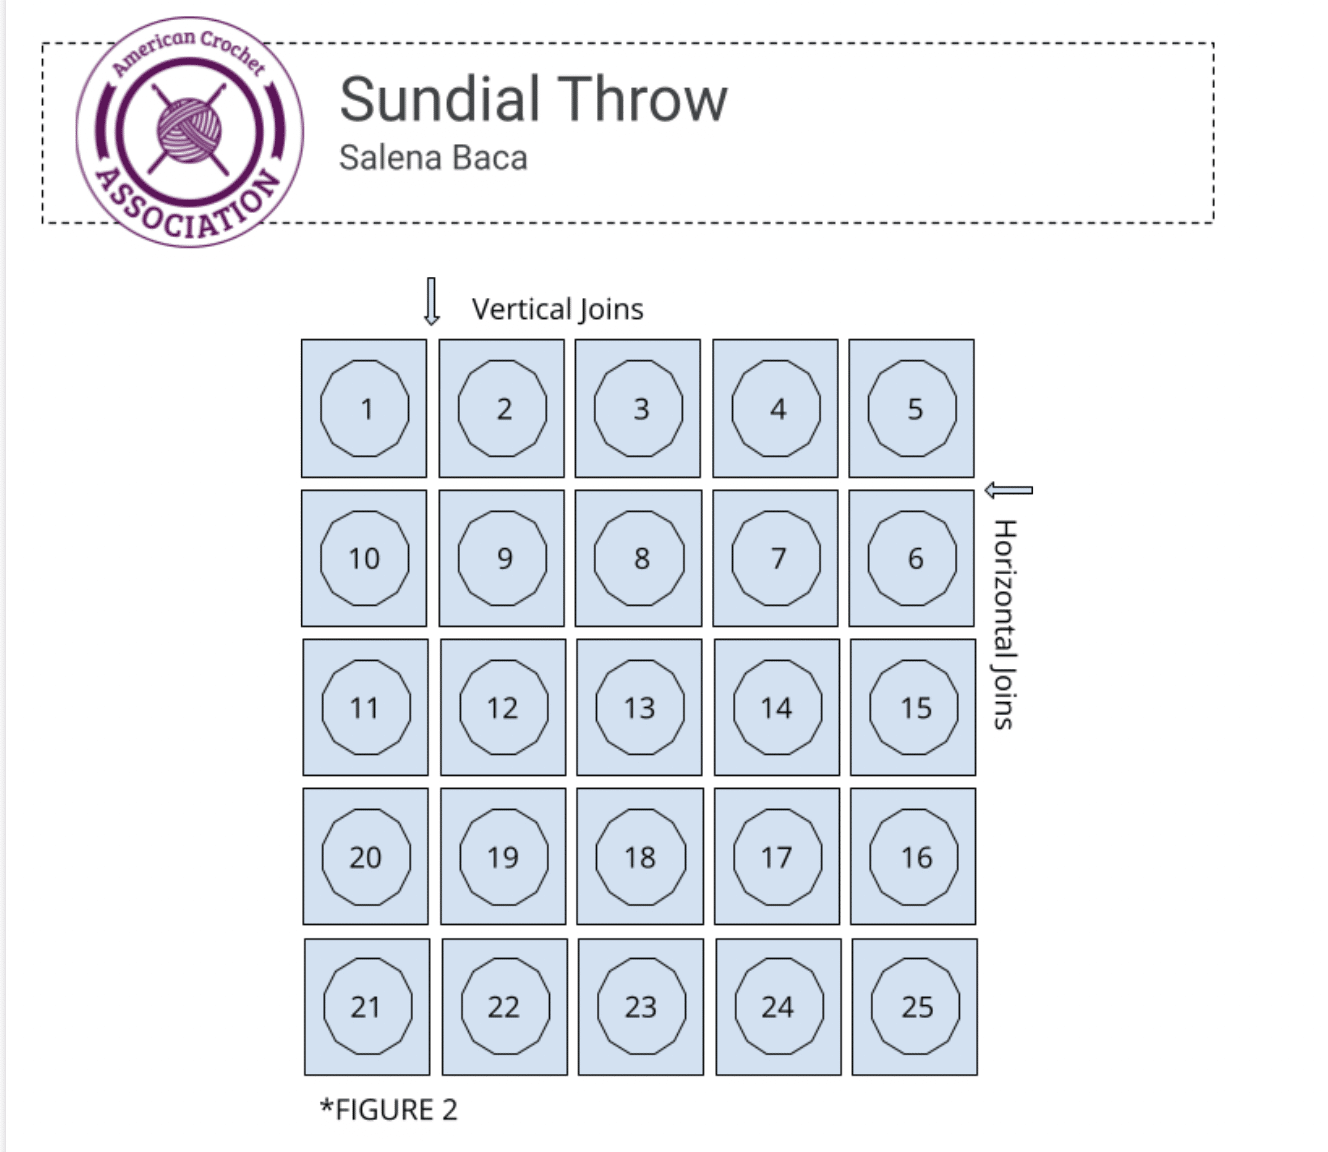 sundial throw motif joining diagram